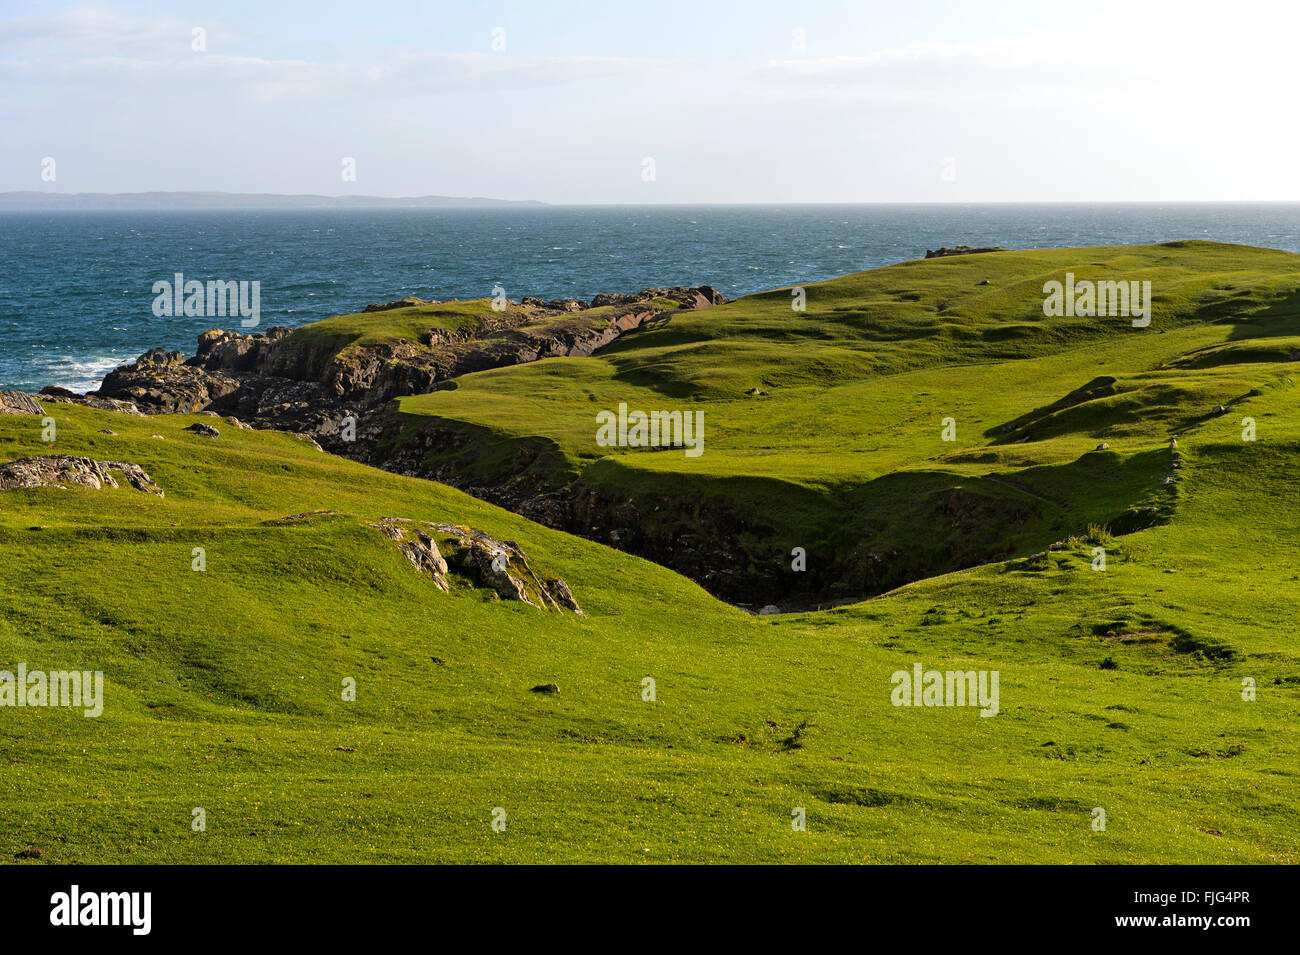 Vert pâturage sur la côte écossaise, Clachtoll, Ecosse, Royaume-Uni Banque D'Images